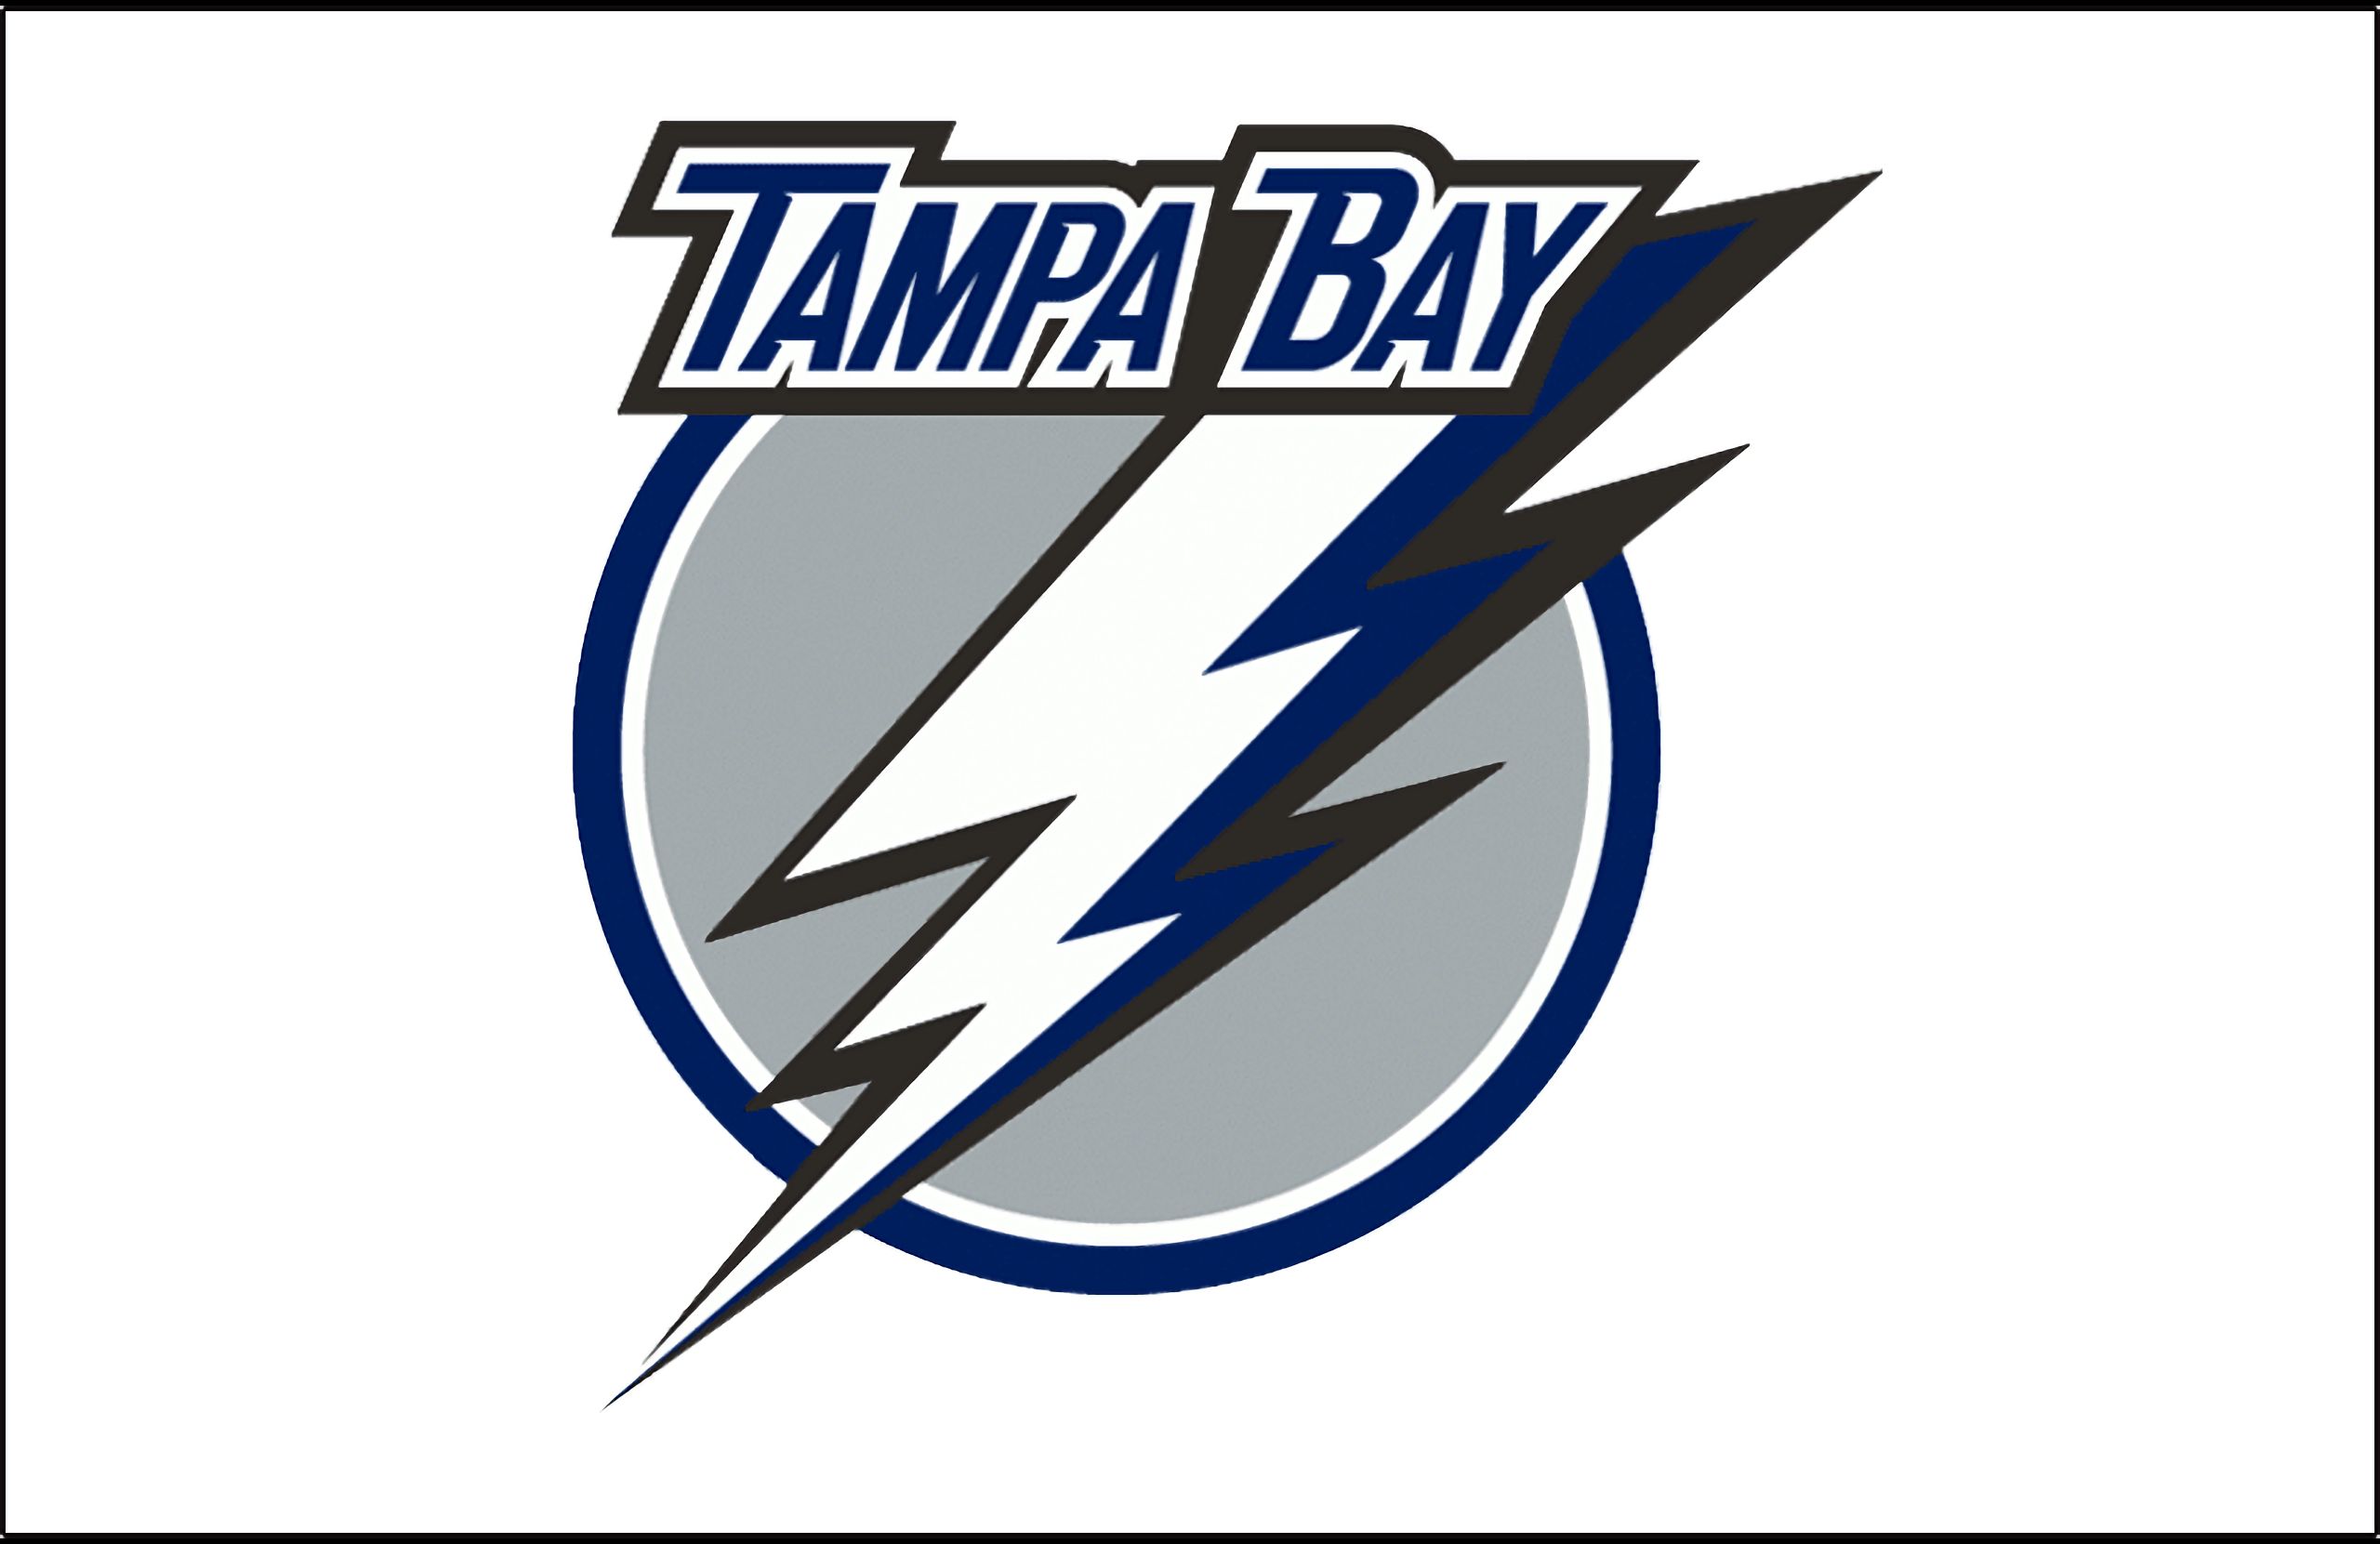 Tampa Bay Lightning Wallpapers - Top Free Tampa Bay Lightning